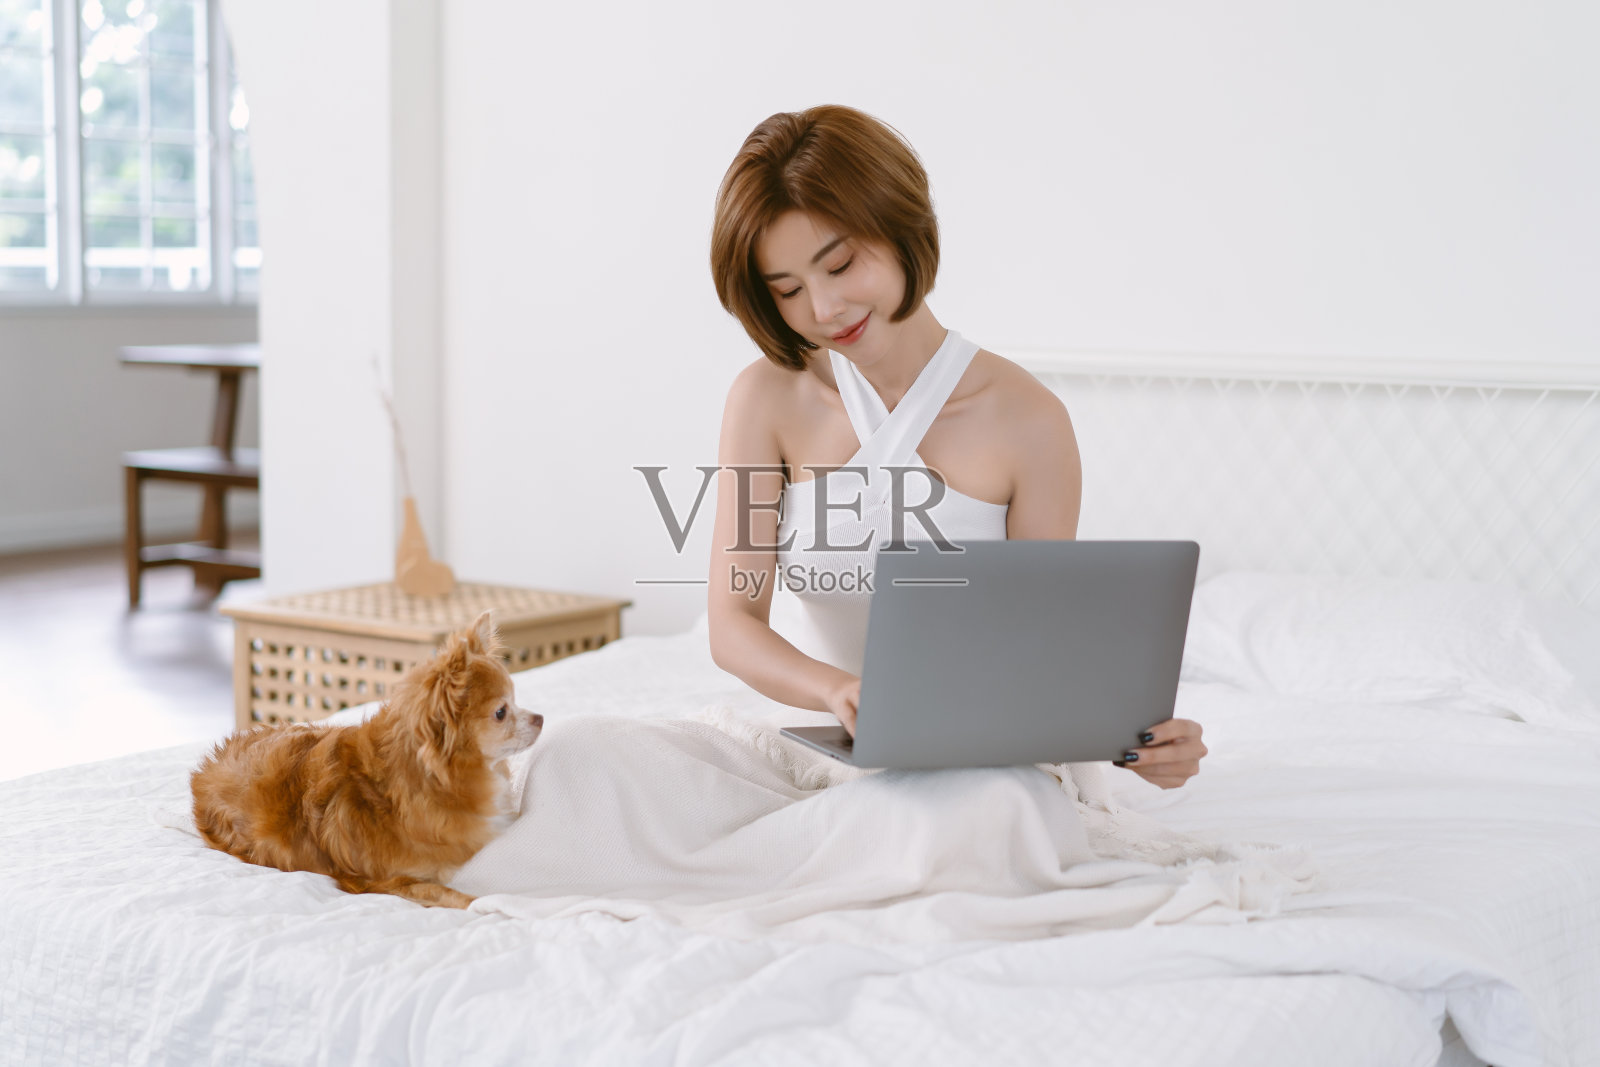 美丽的亚洲女孩白色露肩衣服亲吻她可爱的棕色吉娃娃狗在床上在卧室在家里。主人与宠物之间的亲情关系。友好的概念照片摄影图片